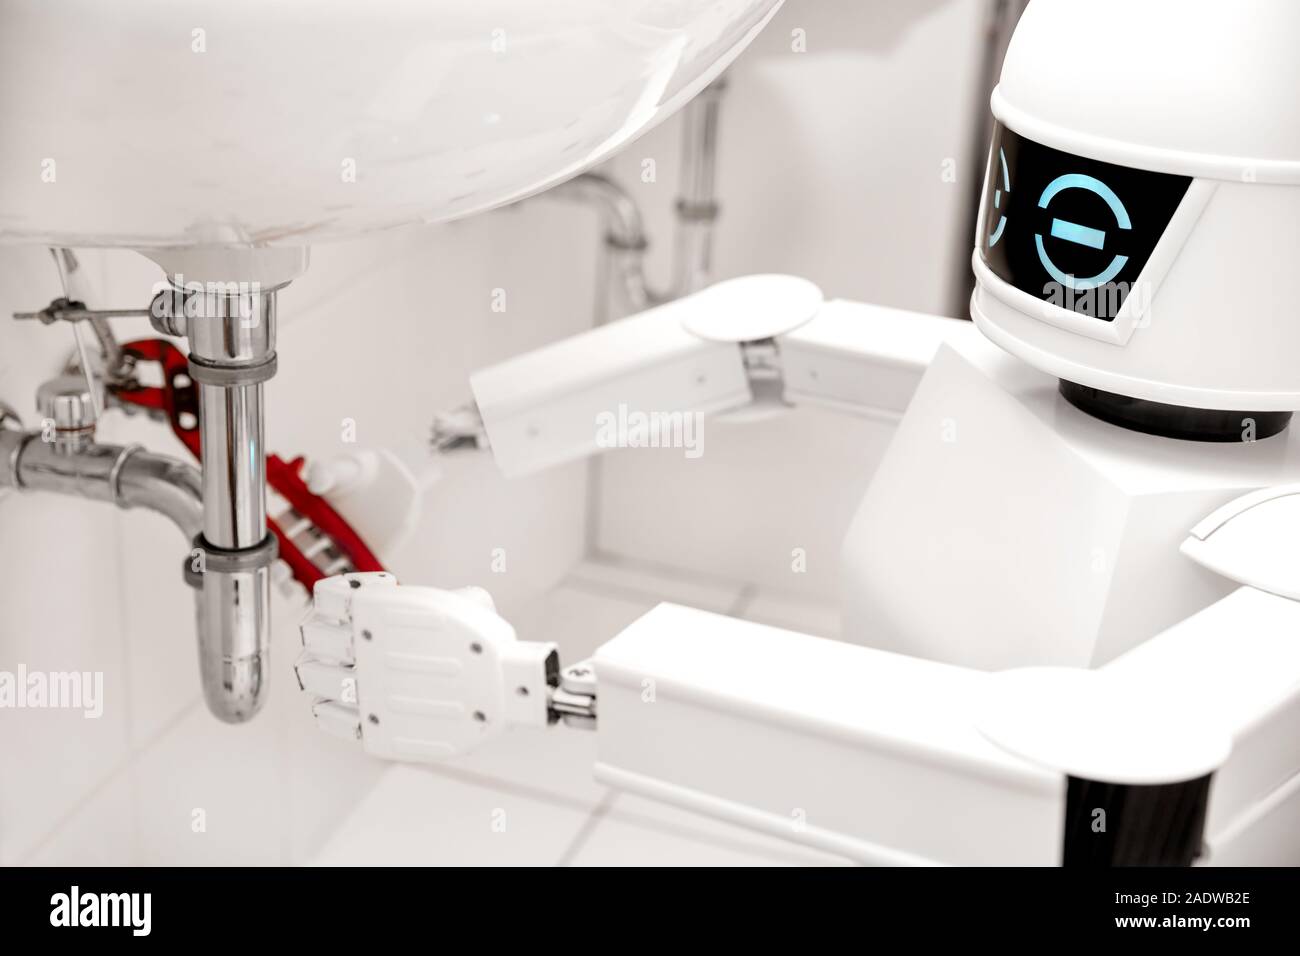 Le robot de service autonome de fixation est quelque chose dans la salle de bain, avec une clé à tube sous le lavabo Banque D'Images